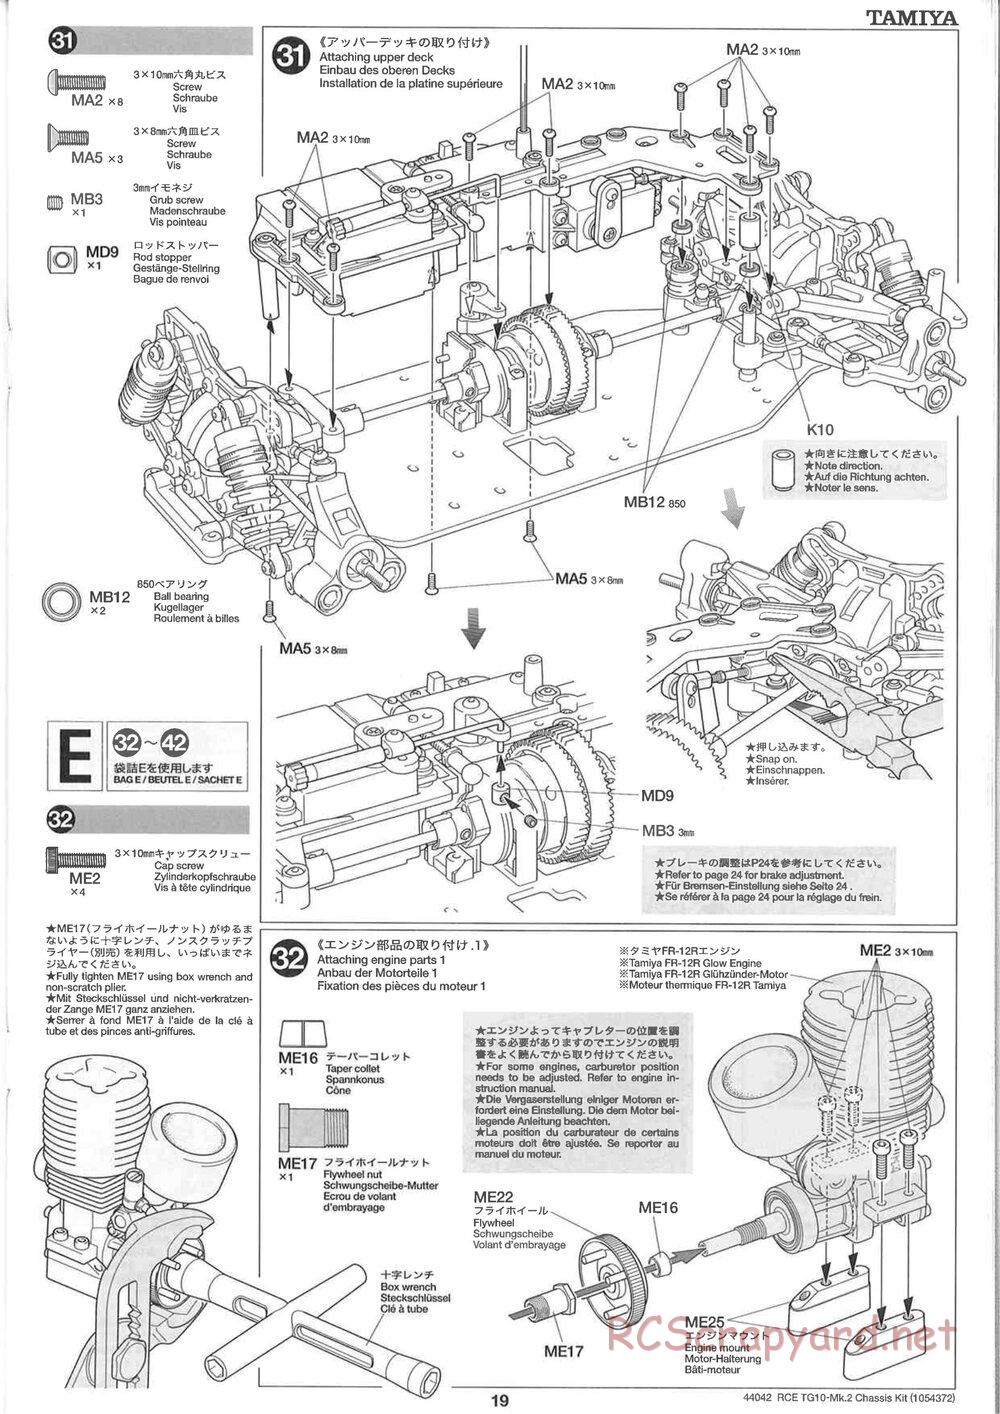 Tamiya - TG10 Mk.2 Chassis - Manual - Page 19